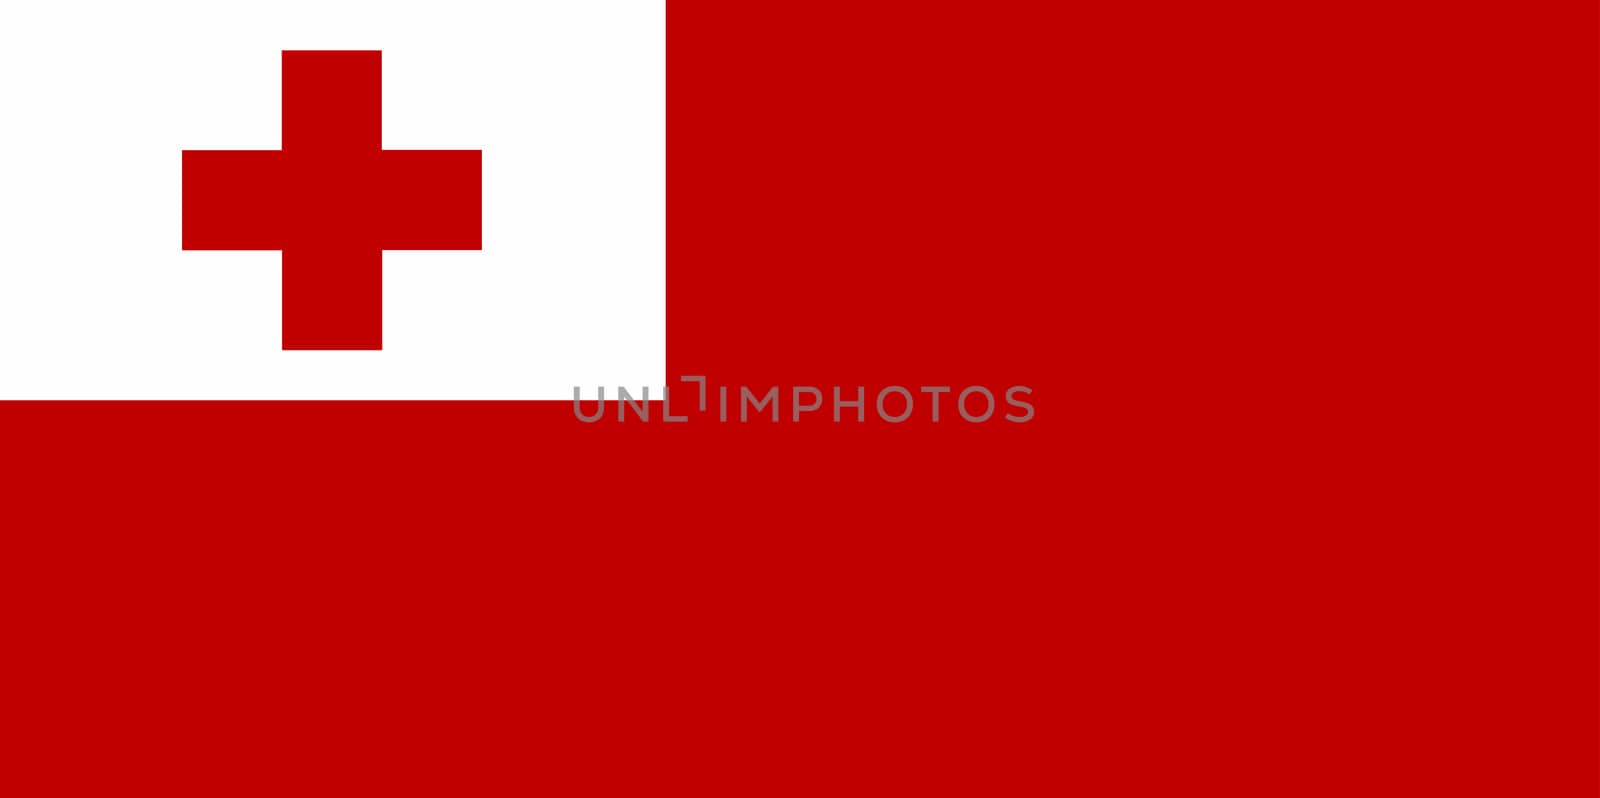 National flag of Tonga